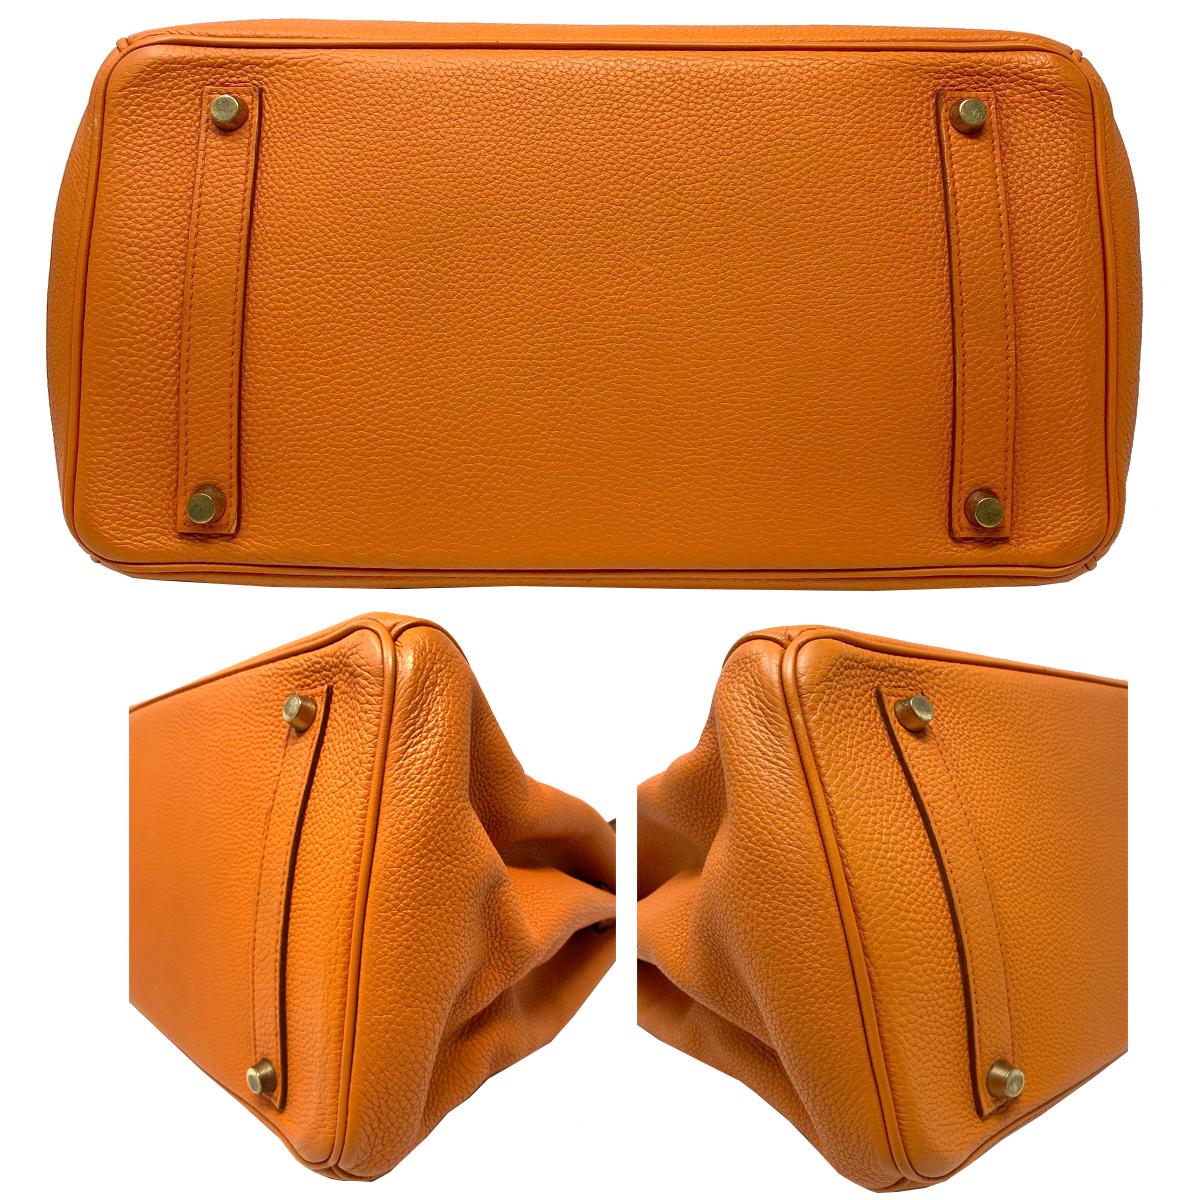 Hermes Birkin 35 Bag Togo Orange Leather GHW Top Handle Handbag For Sale 1